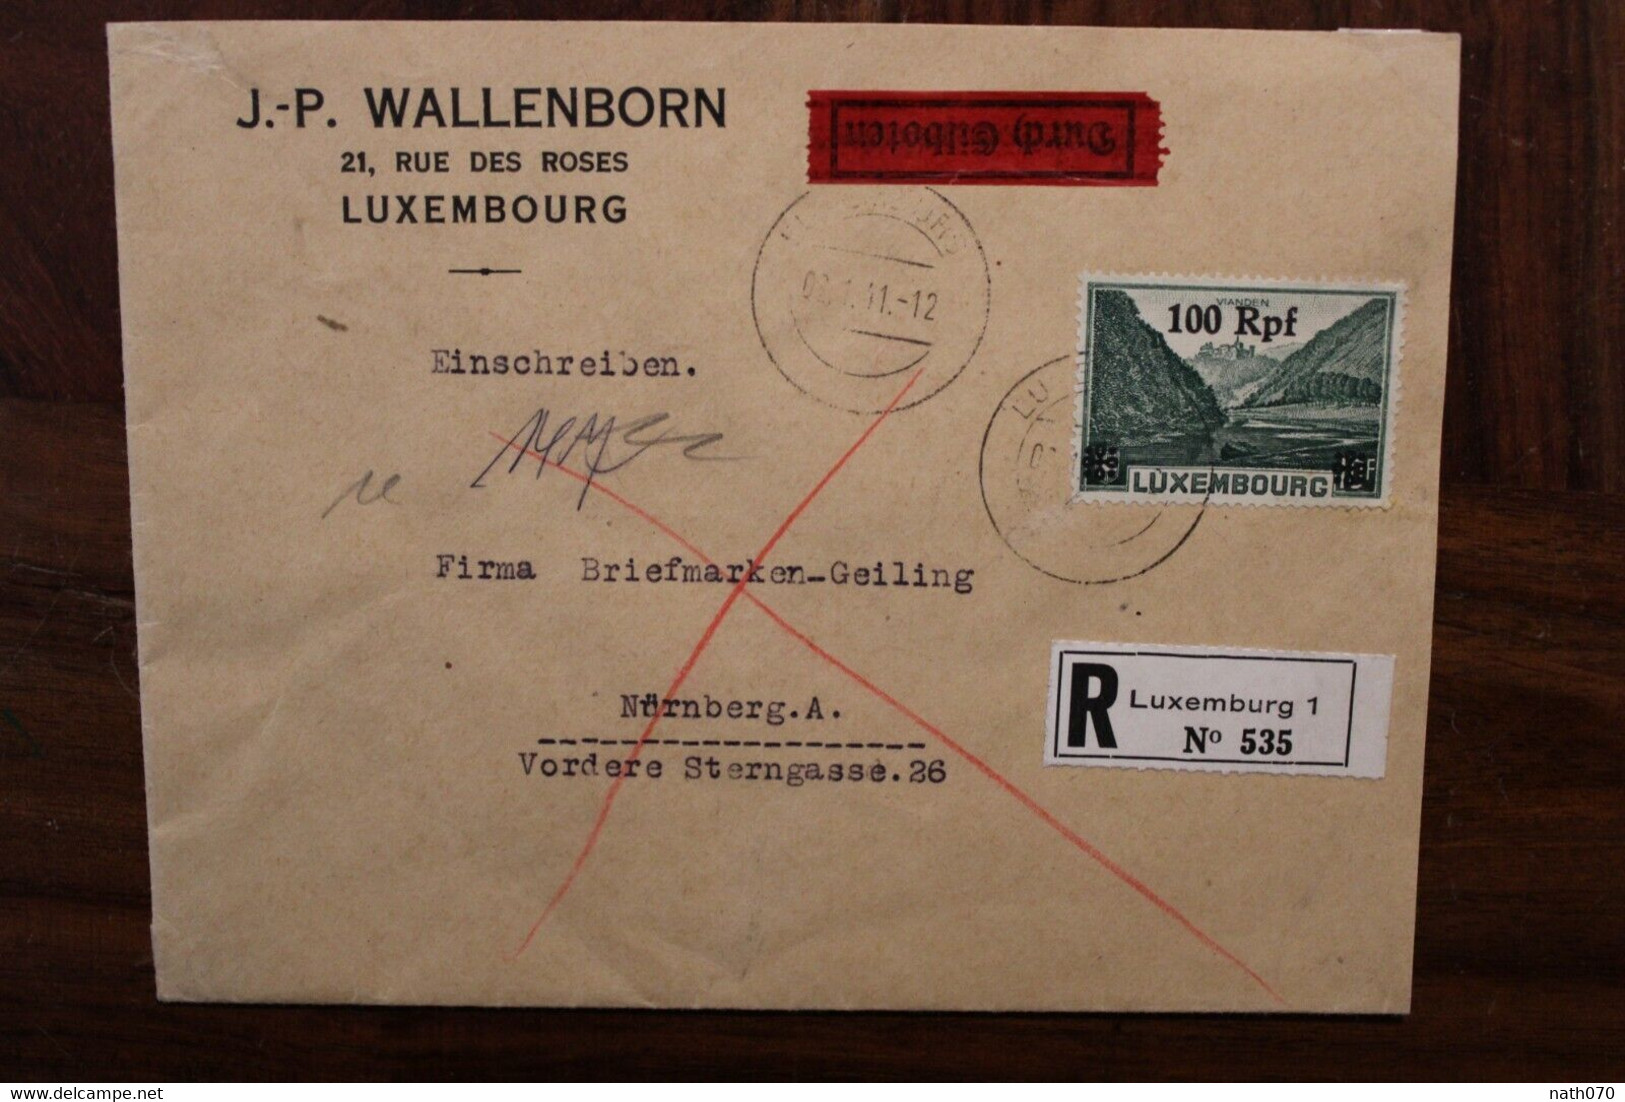 LUXEMBURG 1941 Durch Eilboten Einschreiben Cover Luxembourg Registered Recommandé Besetzung - 1940-1944 Duitse Bezetting